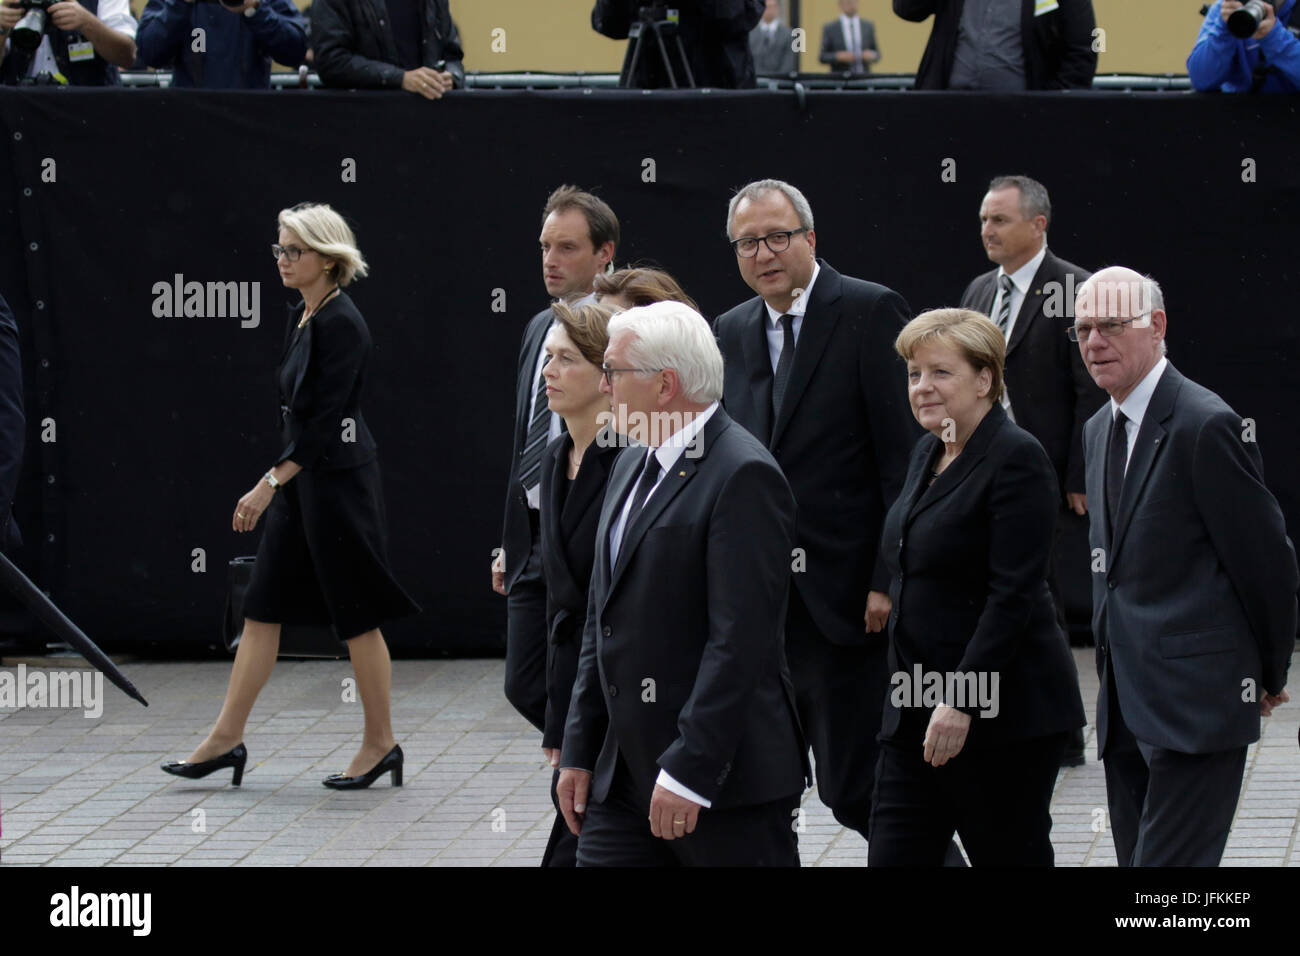 Speyer, Germania. Il 1 luglio 2017. Frank-Walter Steinmeier (seconda a sinistra), il Presidente della Repubblica federale di Germania, sua moglie Elke Budenbender (sinistra), Andreas Vosskuhle (al centro), il presidente della Corte costituzionale federale della Germania, Angela Merkel (seconda a destra), il cancelliere della Germania e Norbert Lammert (a destra), il Presidente del Bundestag tedesco, è possibile raggiungere a piedi la Cattedrale di Speyer. Una messa funebre per l'ex cancelliere tedesco Helmut Kohl si è tenuta nella Cattedrale di Speyer. era frequentato da oltre 100 invitati e diverse migliaia di persone hanno seguito la Messa fuori della cattedrale. Foto Stock